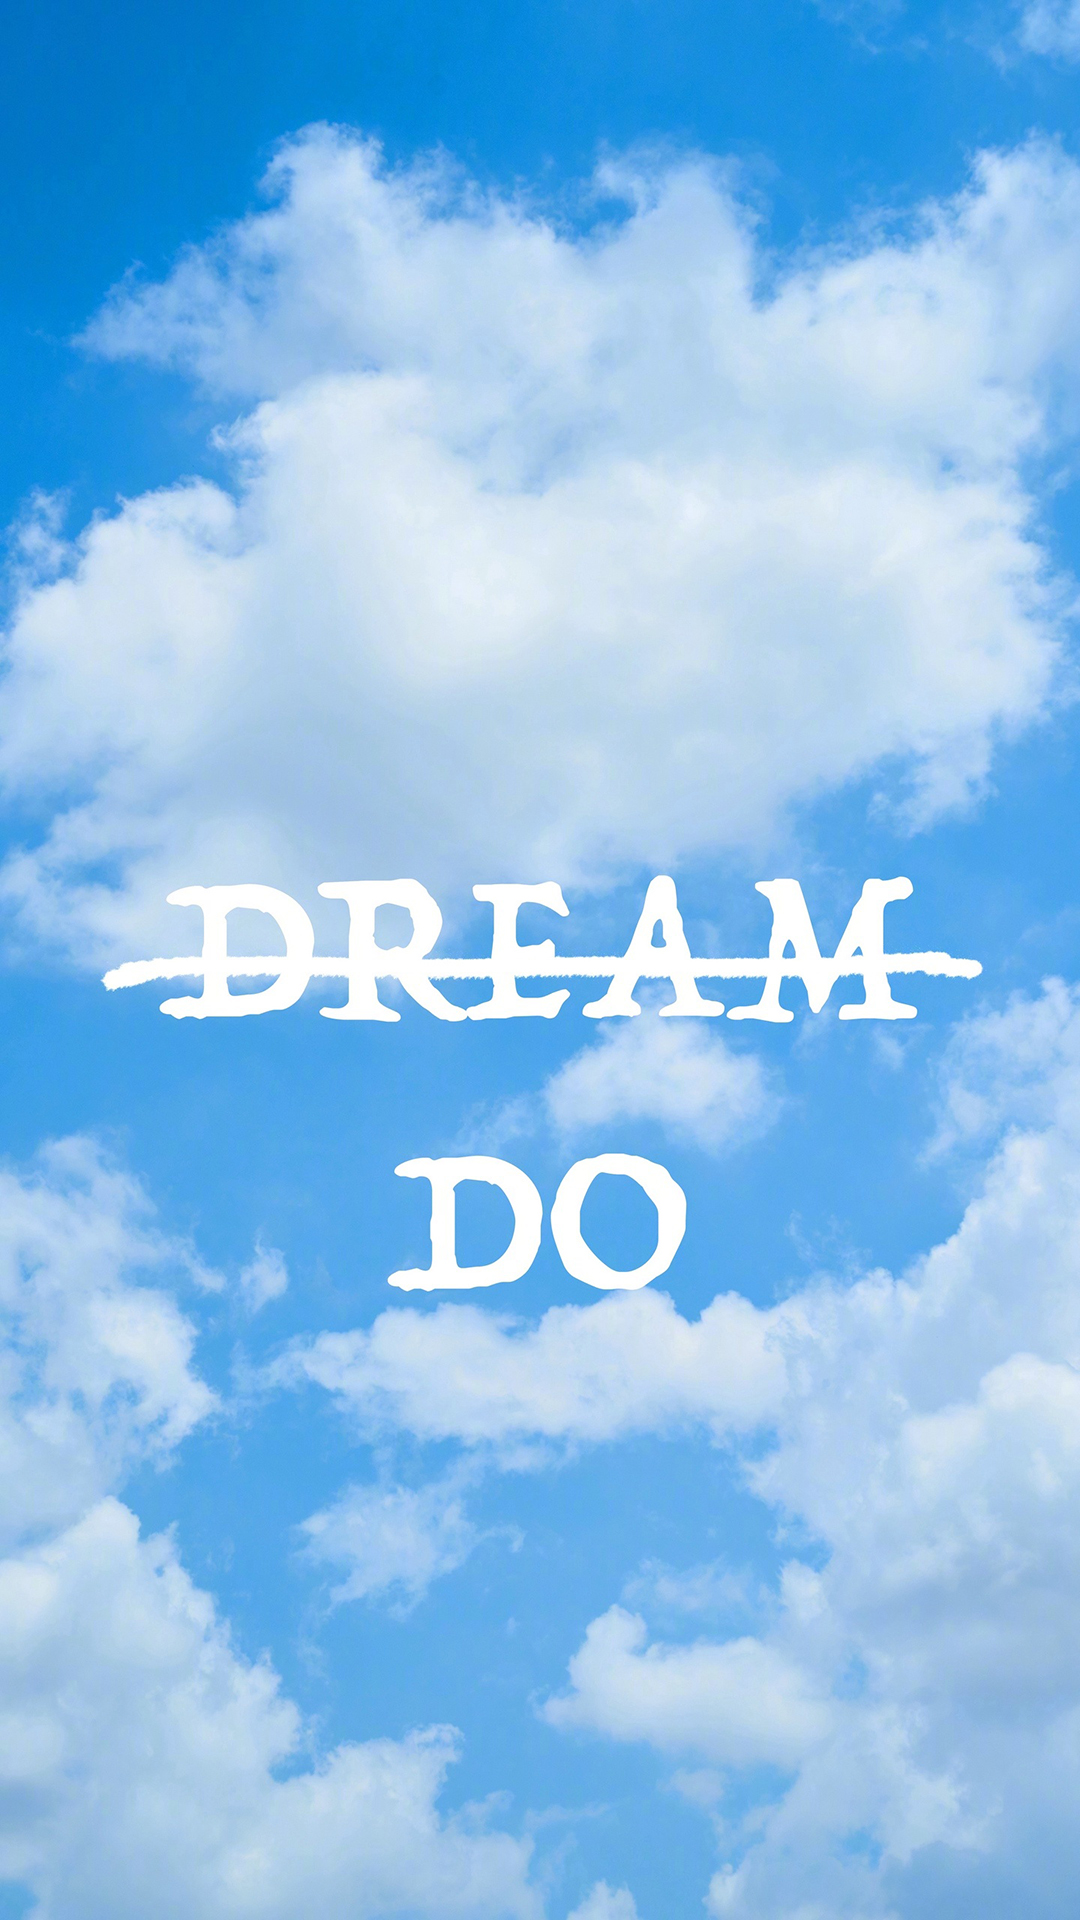 梦想做dream Do 蓝天白云太空英文英语苹果手机高清壁纸1080x19 必威体育 首页